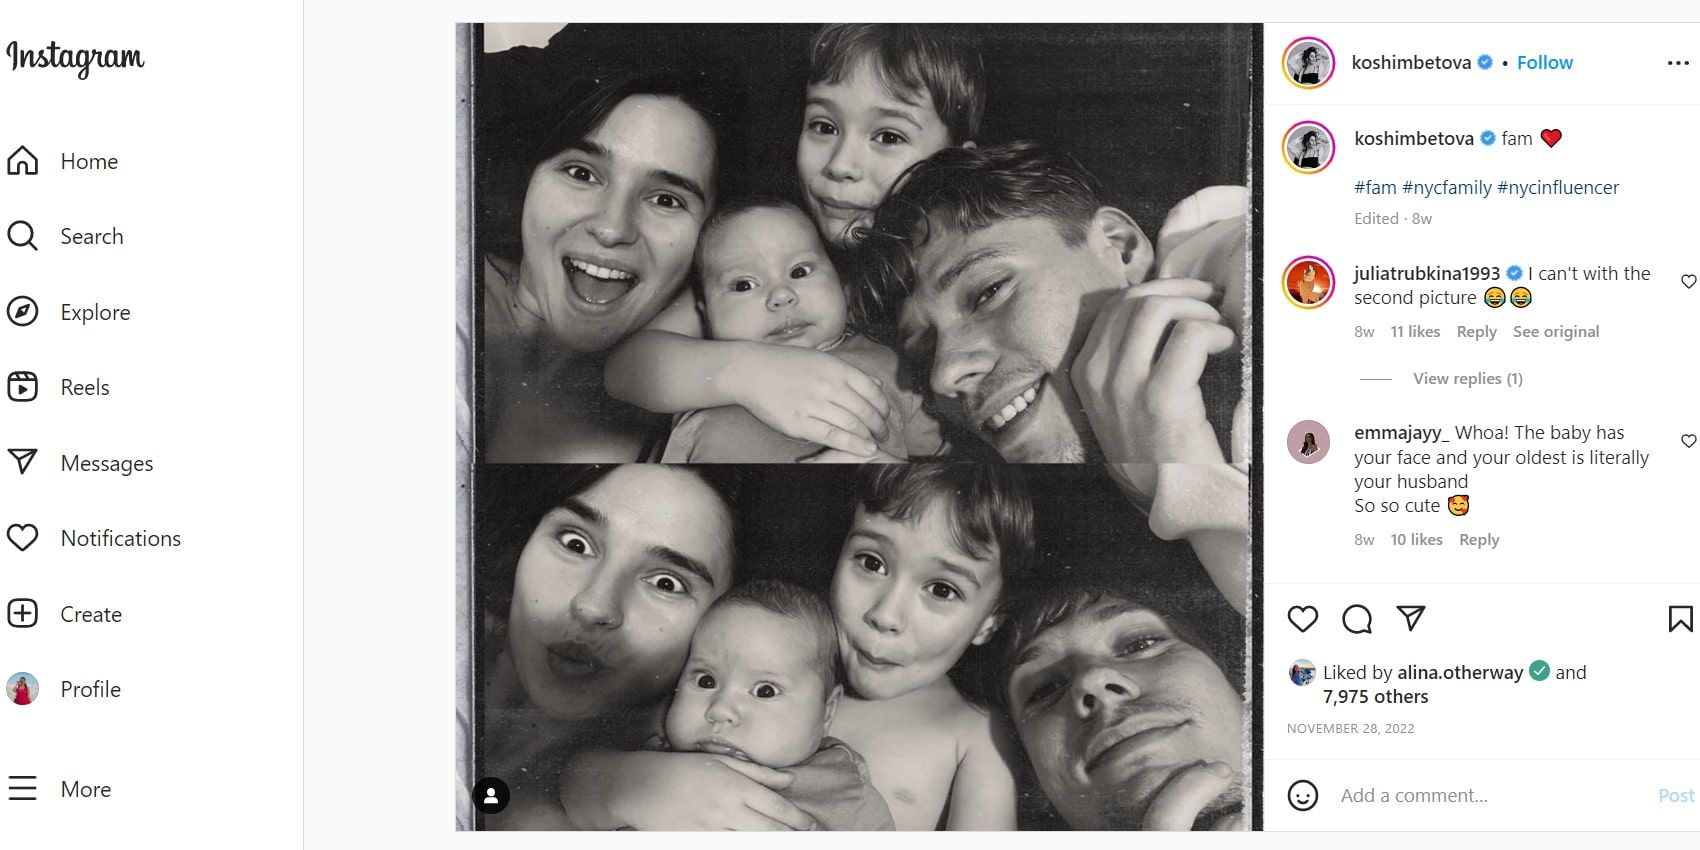 Olga Koshimbetova noivo de 90 dias sorrindo com Steven e seus dois filhos em um post dividido em preto e branco no IG